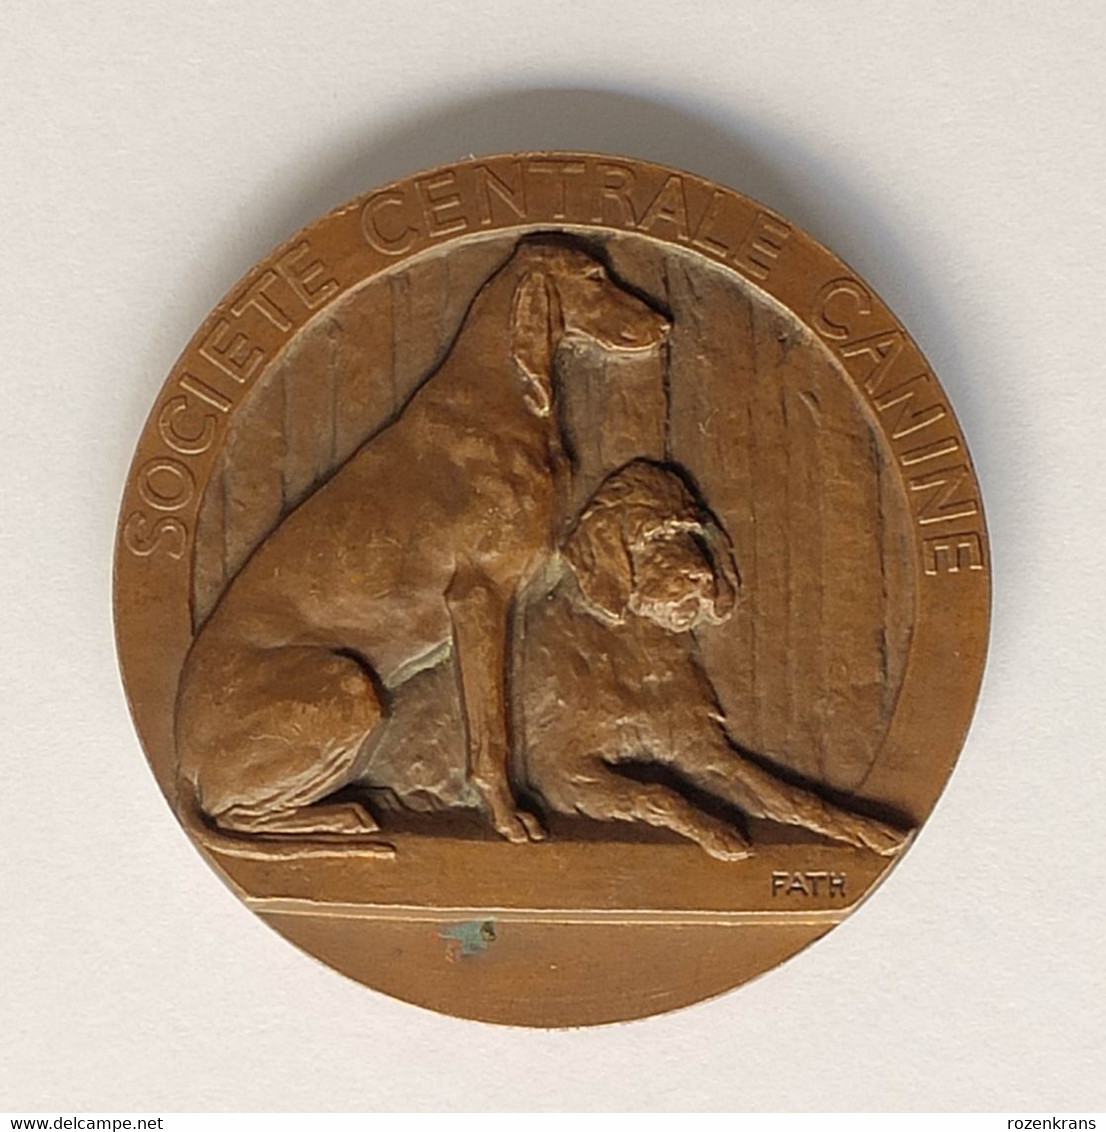 Ancienne Medaille Exposition Internationale De Paris 1939 Societe Centrale Canine Chien Dog Hond Old Medal France - Professionnels / De Société